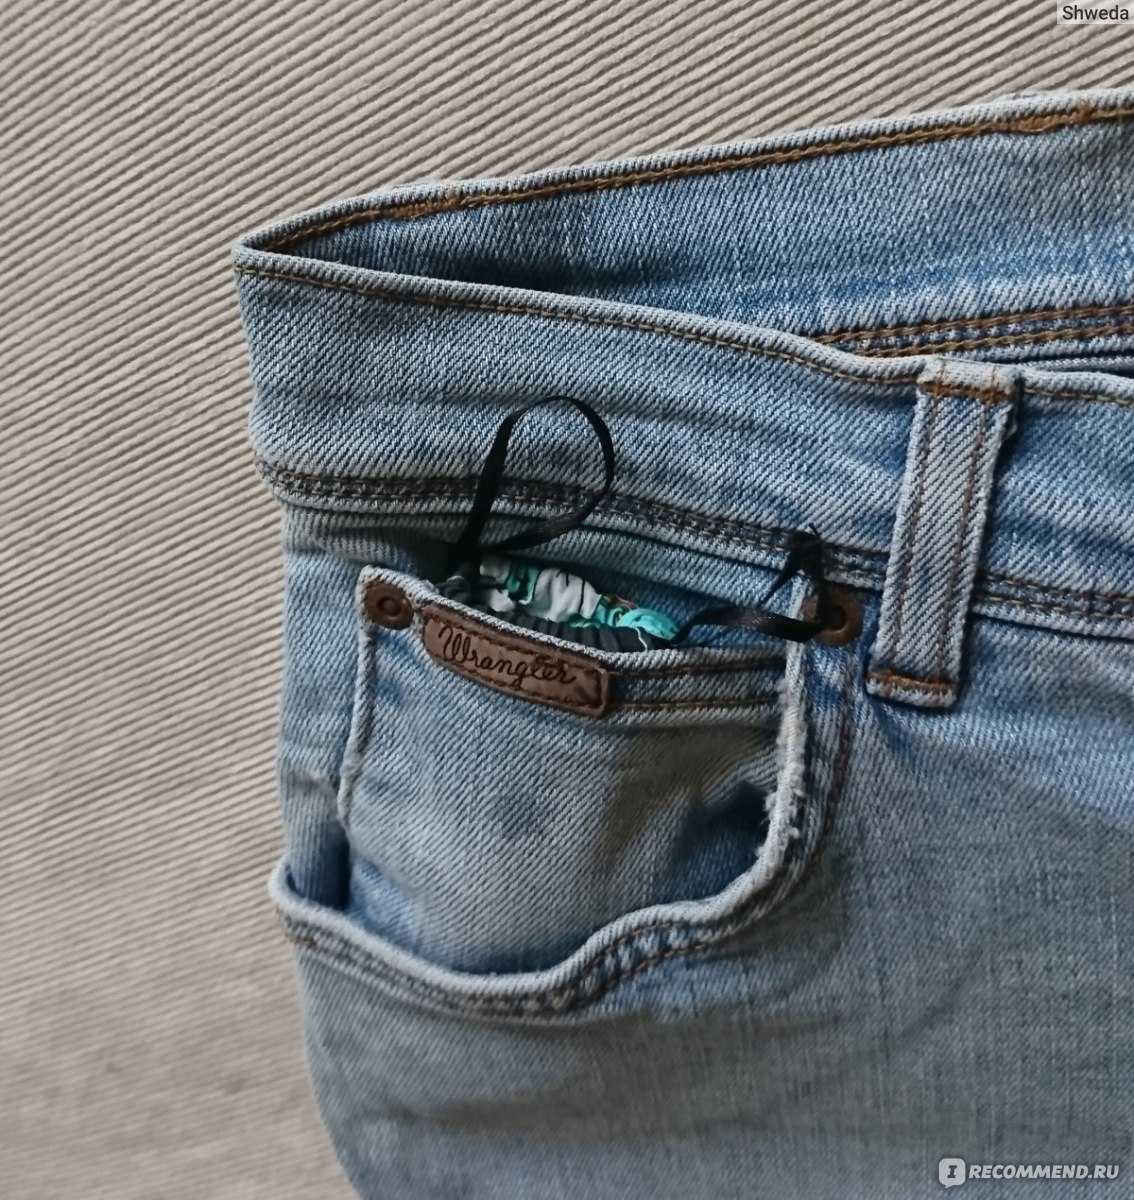 Зачем нужен маленький карман на джинсах: шесть версий его происхождения - kickmedia